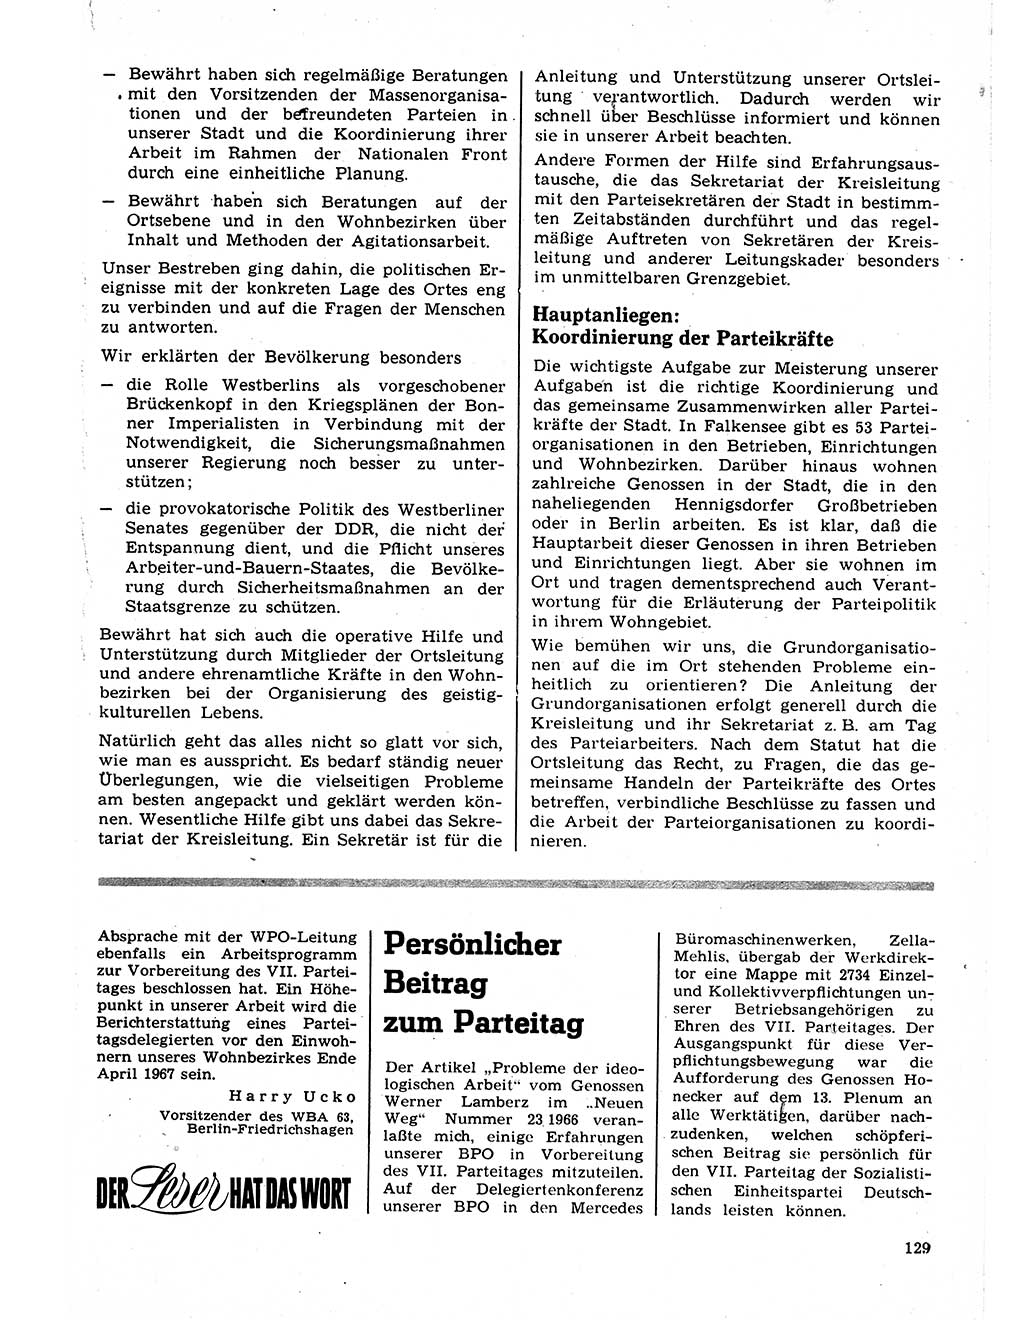 Neuer Weg (NW), Organ des Zentralkomitees (ZK) der SED (Sozialistische Einheitspartei Deutschlands) für Fragen des Parteilebens, 22. Jahrgang [Deutsche Demokratische Republik (DDR)] 1967, Seite 129 (NW ZK SED DDR 1967, S. 129)